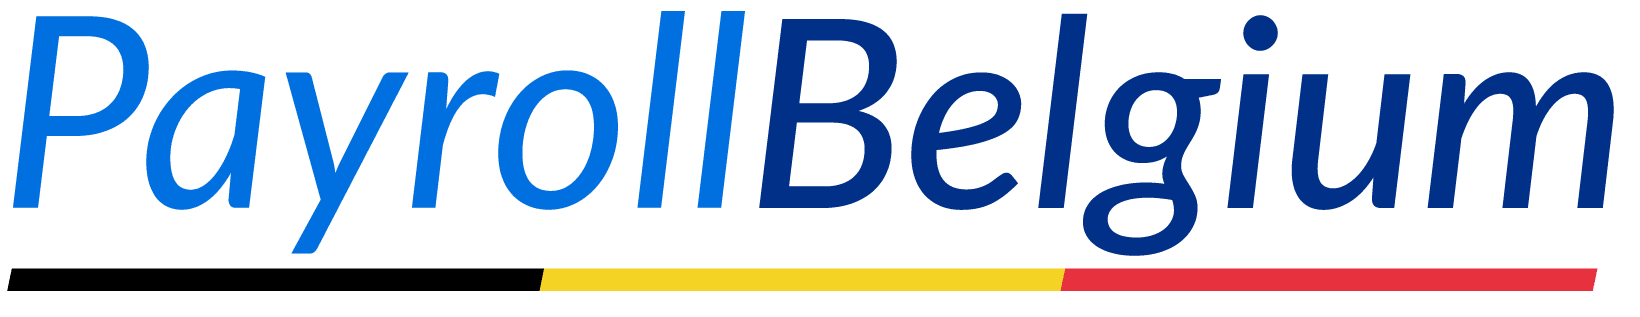 payroll belgium logo